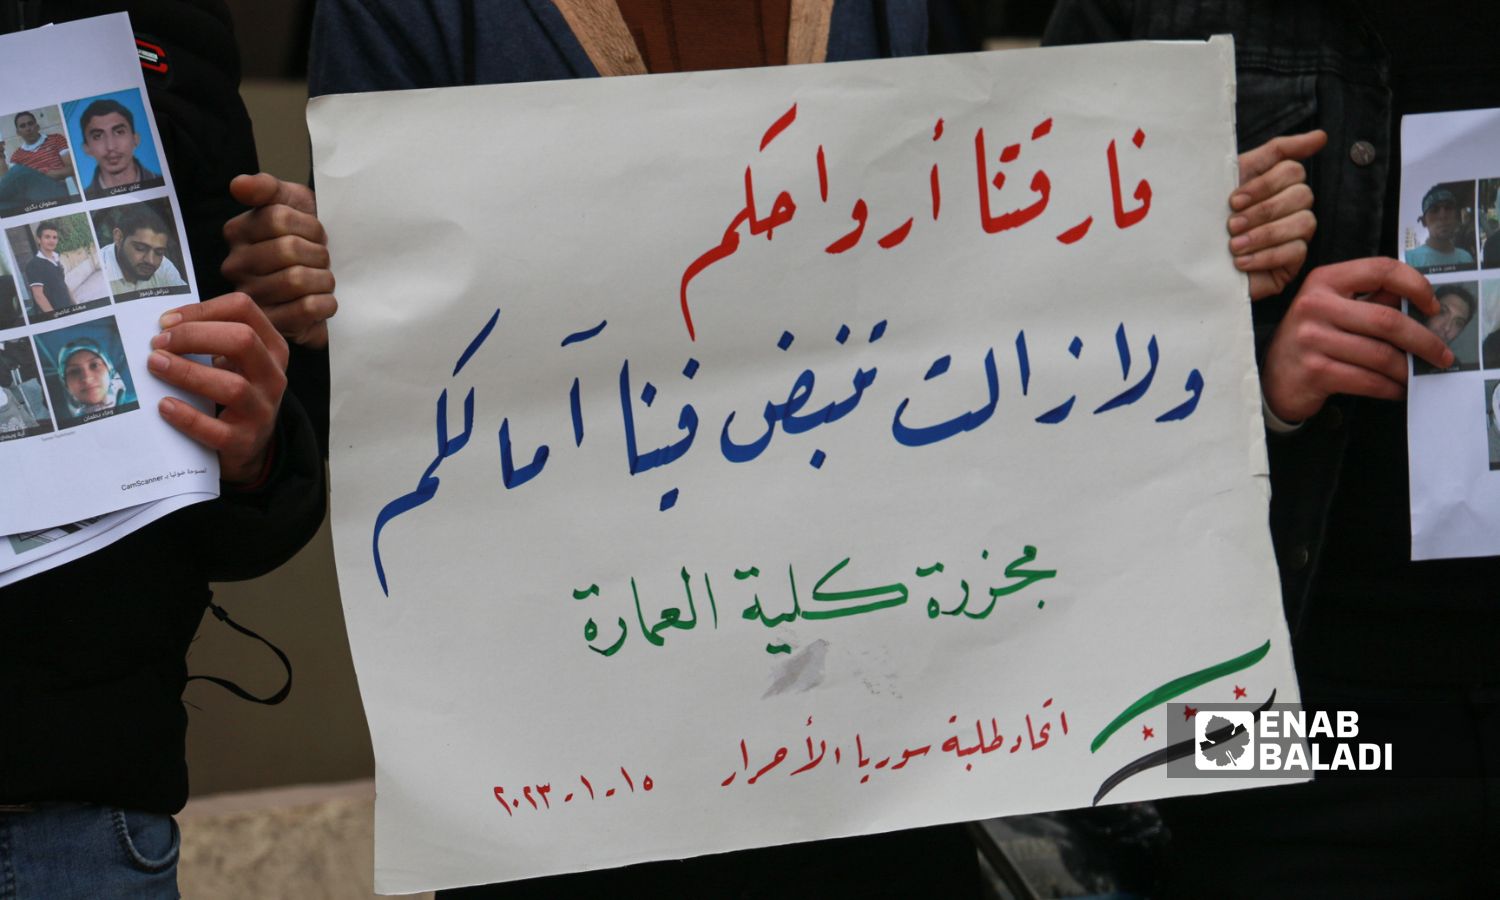 وقفة تضامنية أمام مبنى جامعة "النهضة" الخاصة في مدينة اعزاز بريف حلب الشمالي، في ذكرى مجزرة "جامعة حلب"_15 كانون الثاني 2023 (عنب بلدي/ديان جنباز)